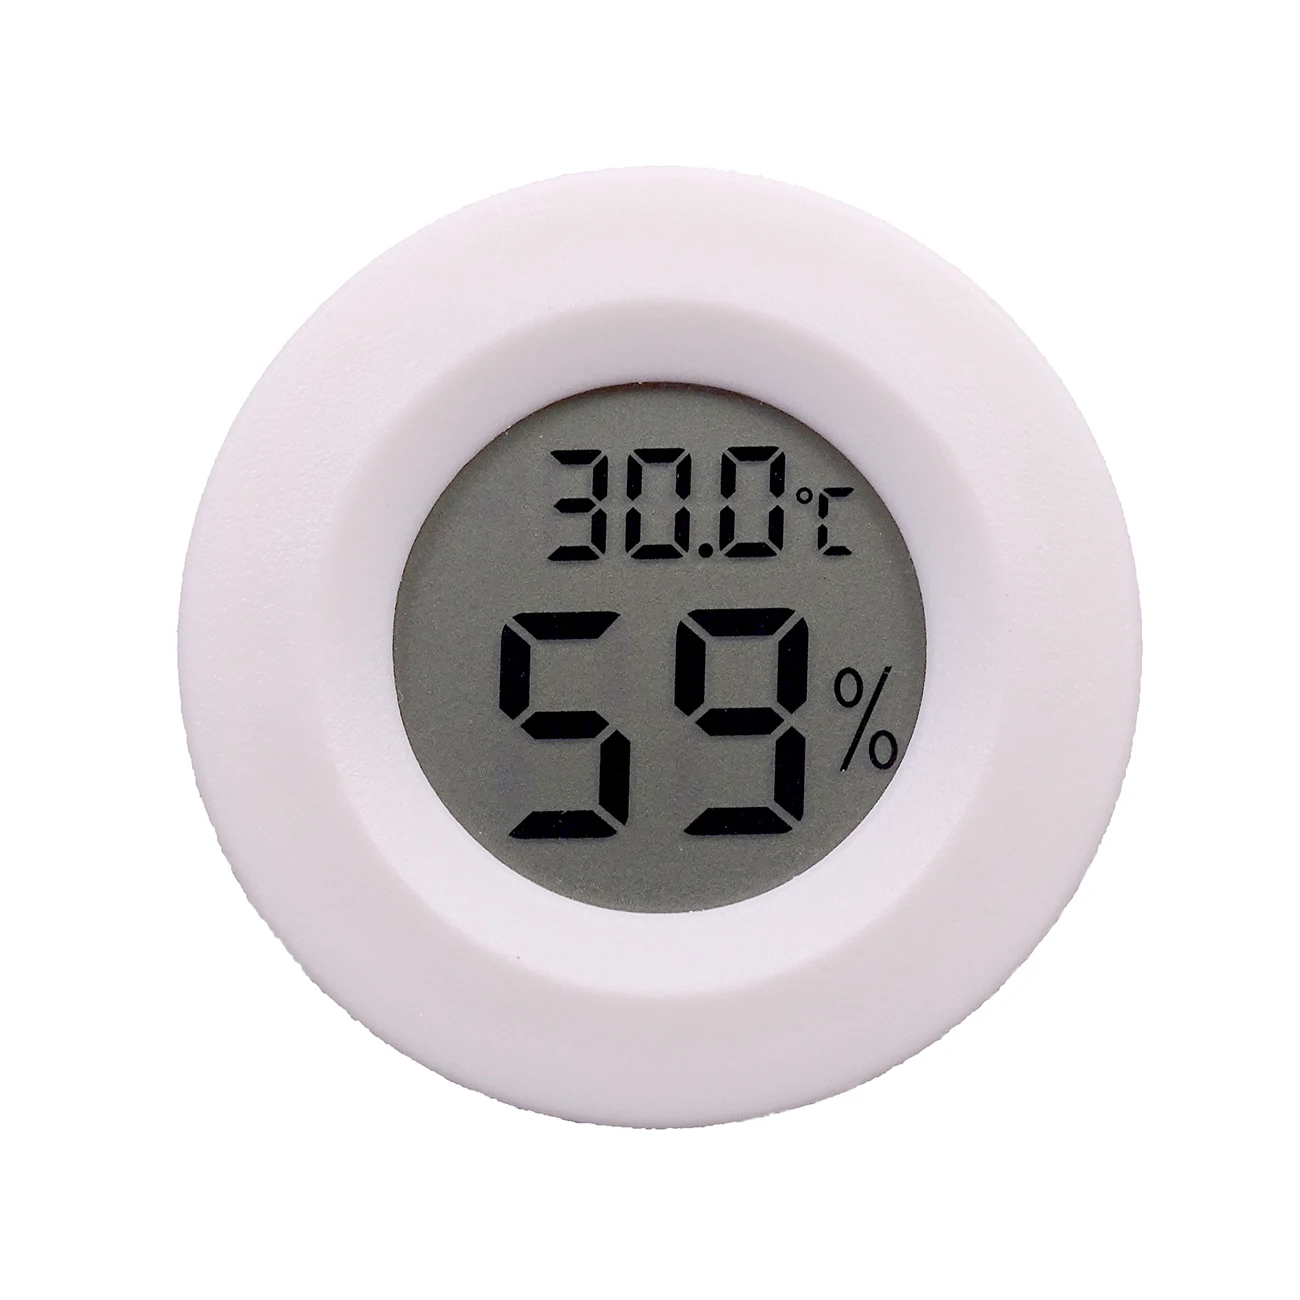 1 шт. Мини ЖК Цифровой термометр гигрометр холодильник тестер морозильника Измеритель температуры и влажности детектор